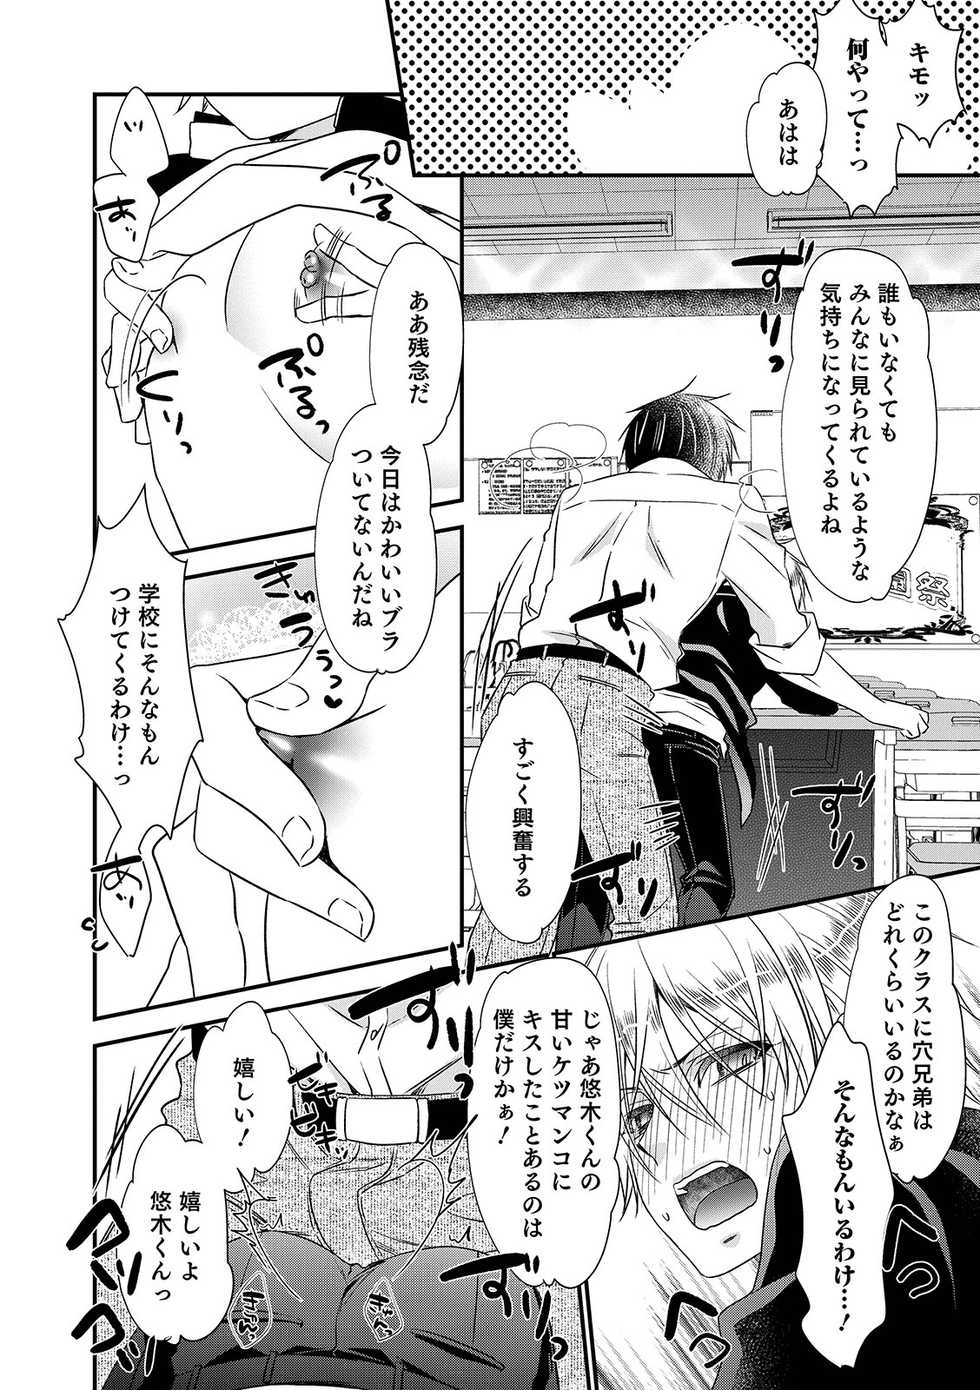 [Anthology] Otokonoko Heaven's Door 9 [Digital] - Page 34